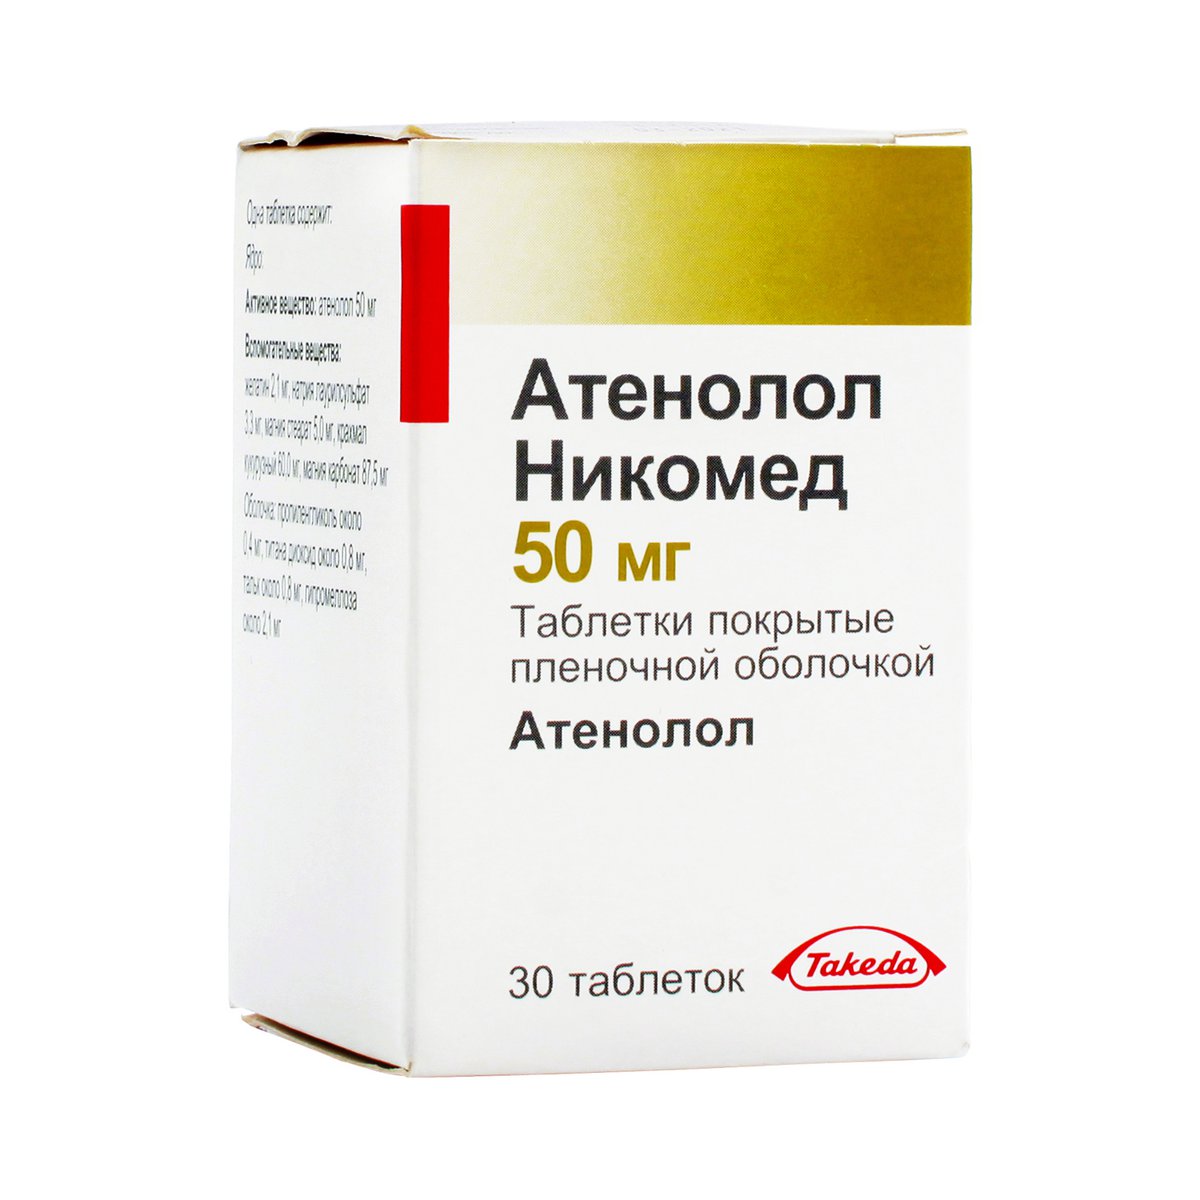 Атенолол Никомед (таблетки, 30 шт, 50 мг) - цена,  онлайн в .